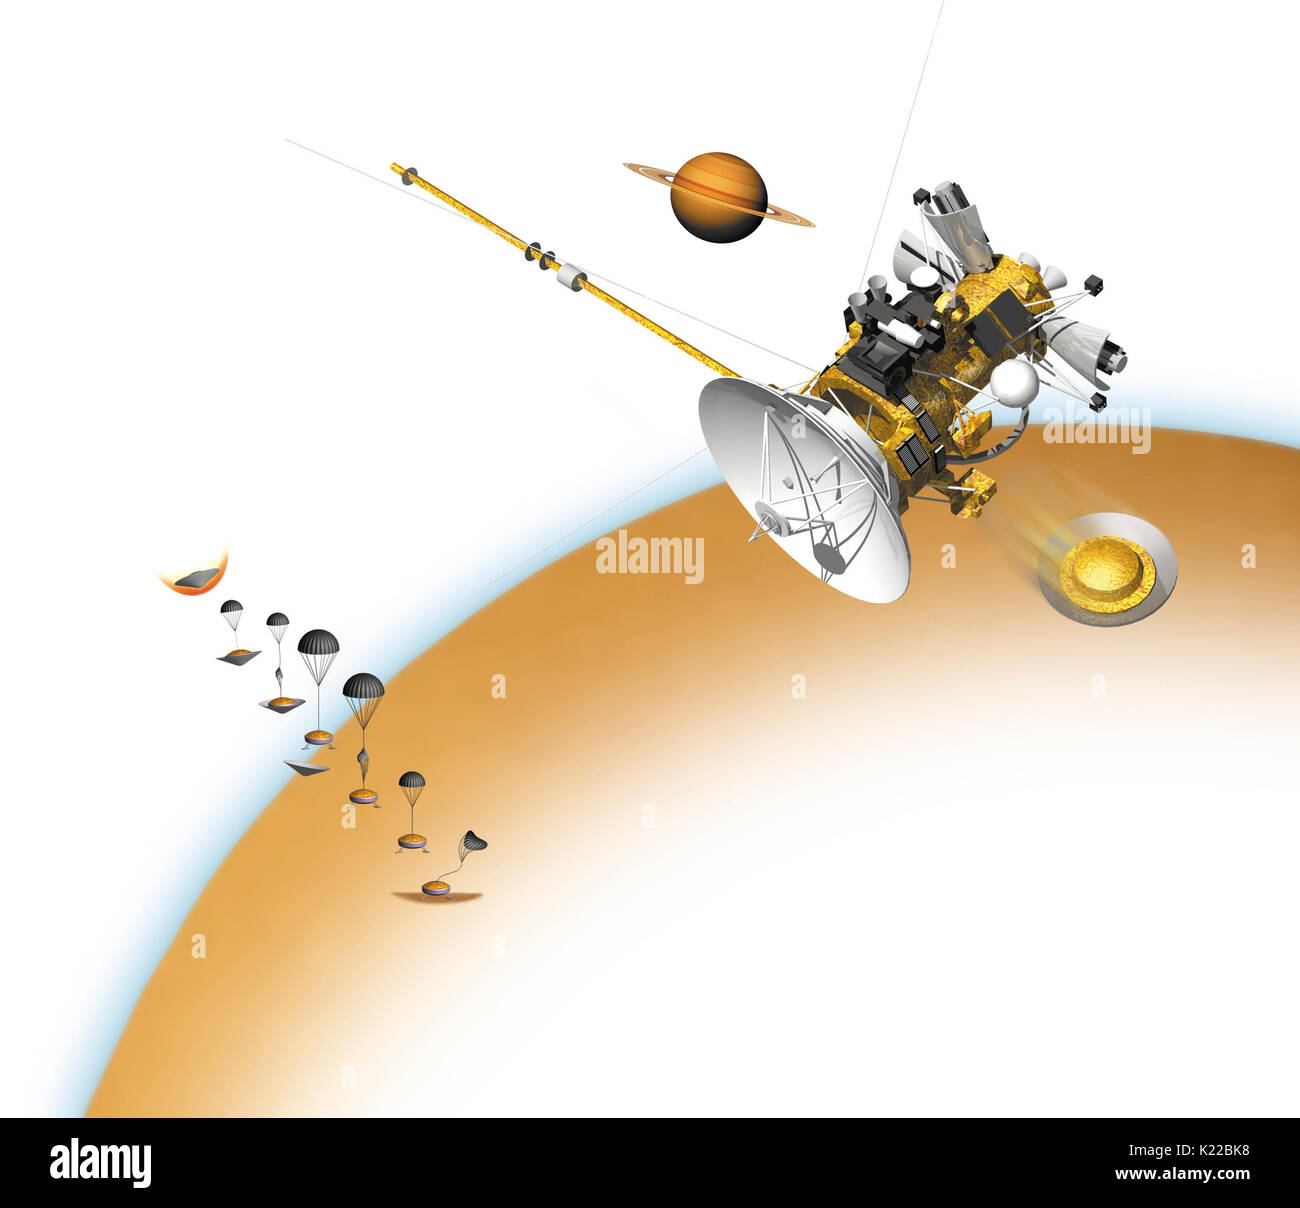 Dezember 2004, die Sonde Huygens hat in die Atmosphäre des Titan eingetragen und hat seinen Piloten Fallschirm eingesetzt. Auf etwa 175 km Höhe, die Sonde ihre wichtigsten Fallschirm geöffnet hat, hat seine Verkleidung gesunken und hat begonnen, ihre wissenschaftliche Instrumente zu verwenden. Huygens hat dann seine Hauptfallschirm abgeworfen und hat ein Stabilisierungs- Fallschirm eingesetzt. Für die letzten 140 km, es hat Daten, die die Sonde übertragen werden, vor der Landung. Stockfoto